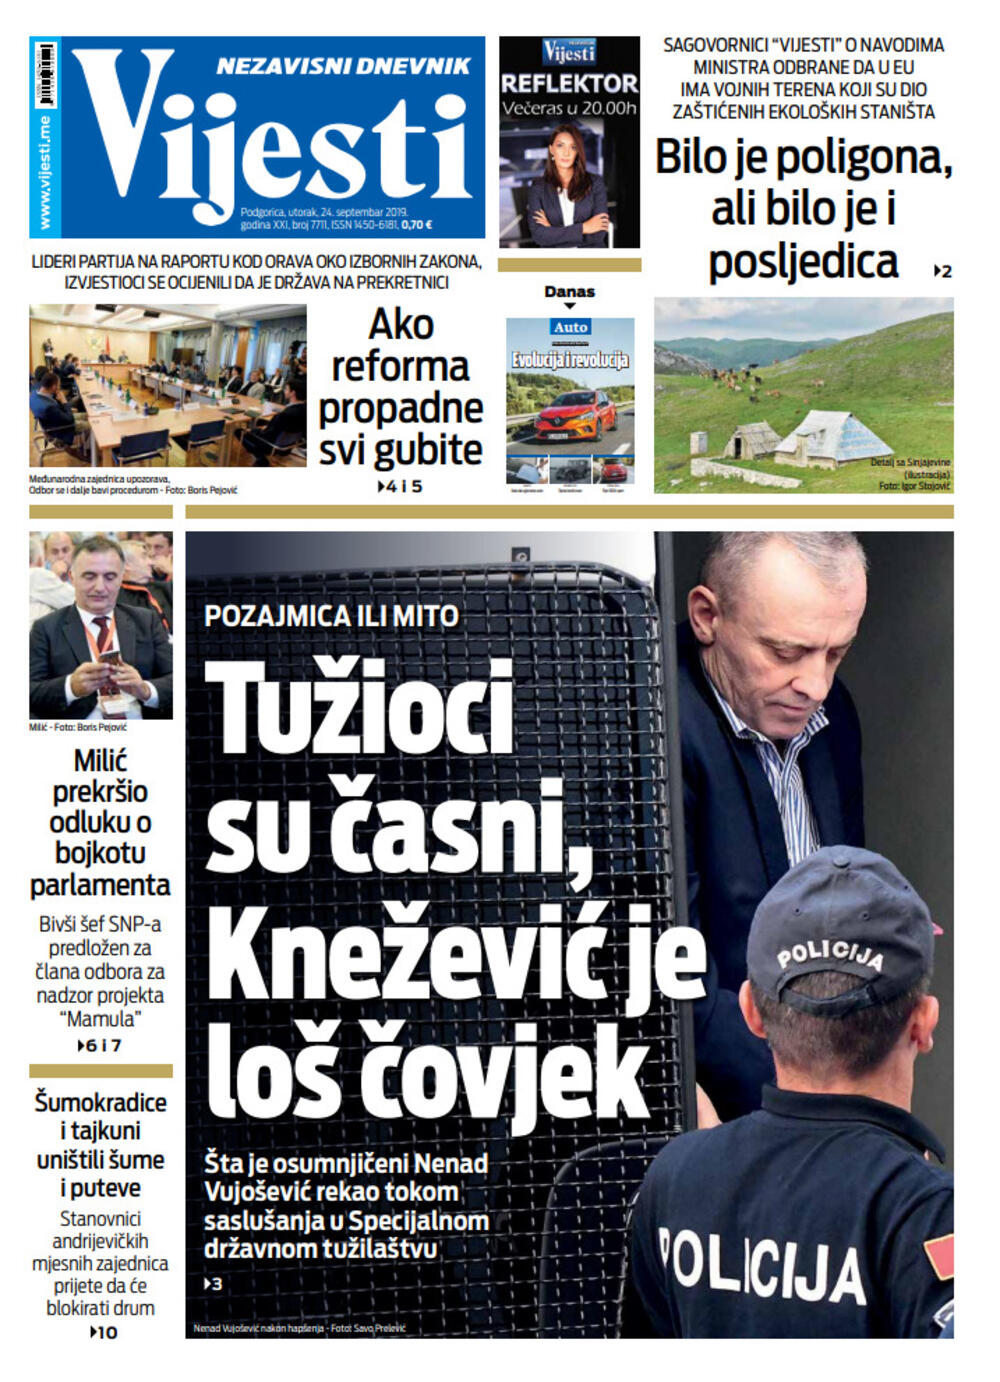 Naslovna strana "Vijesti" za 24. septembar, Foto: Vijesti